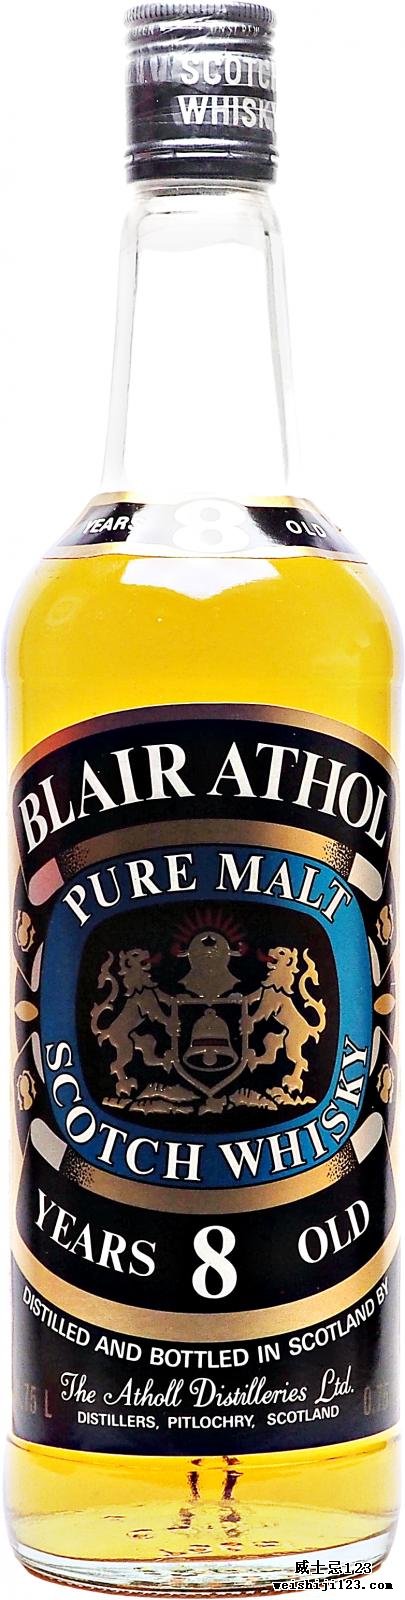 Blair Athol Pure Malt